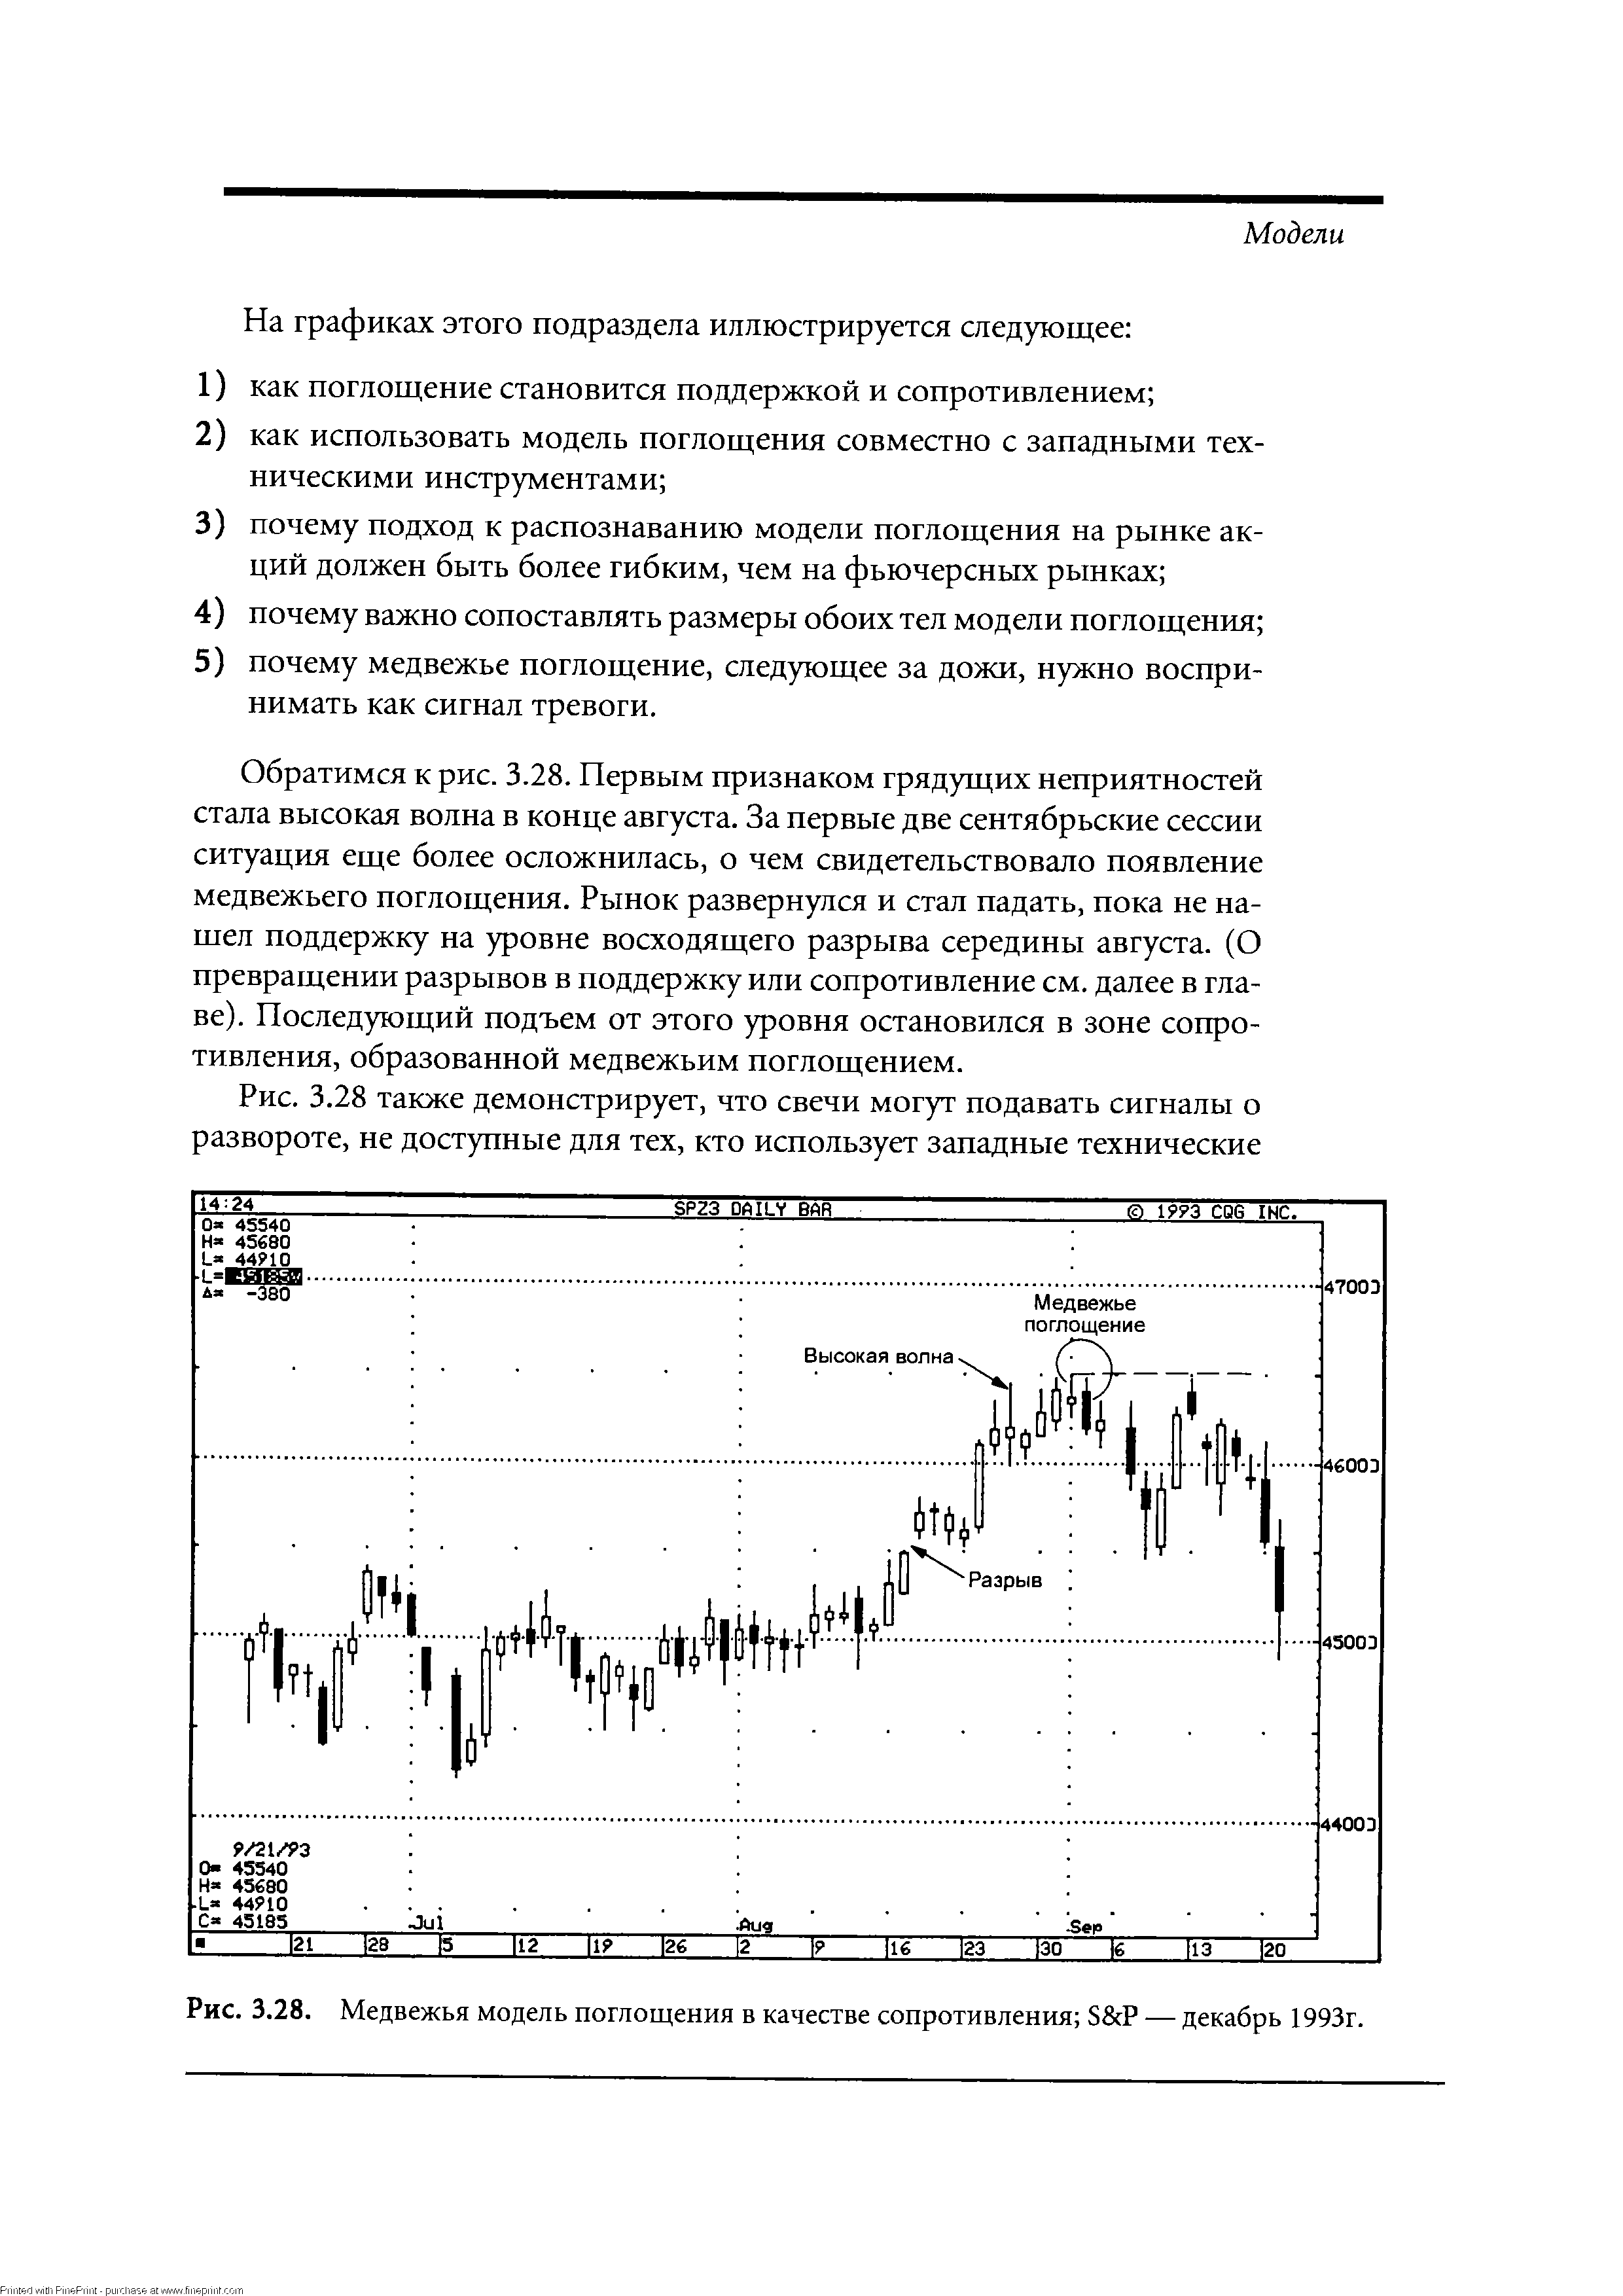 Рис. 3.28. Медвежья модель поглощения в качестве сопротивления S P — декабрь 1993г.
